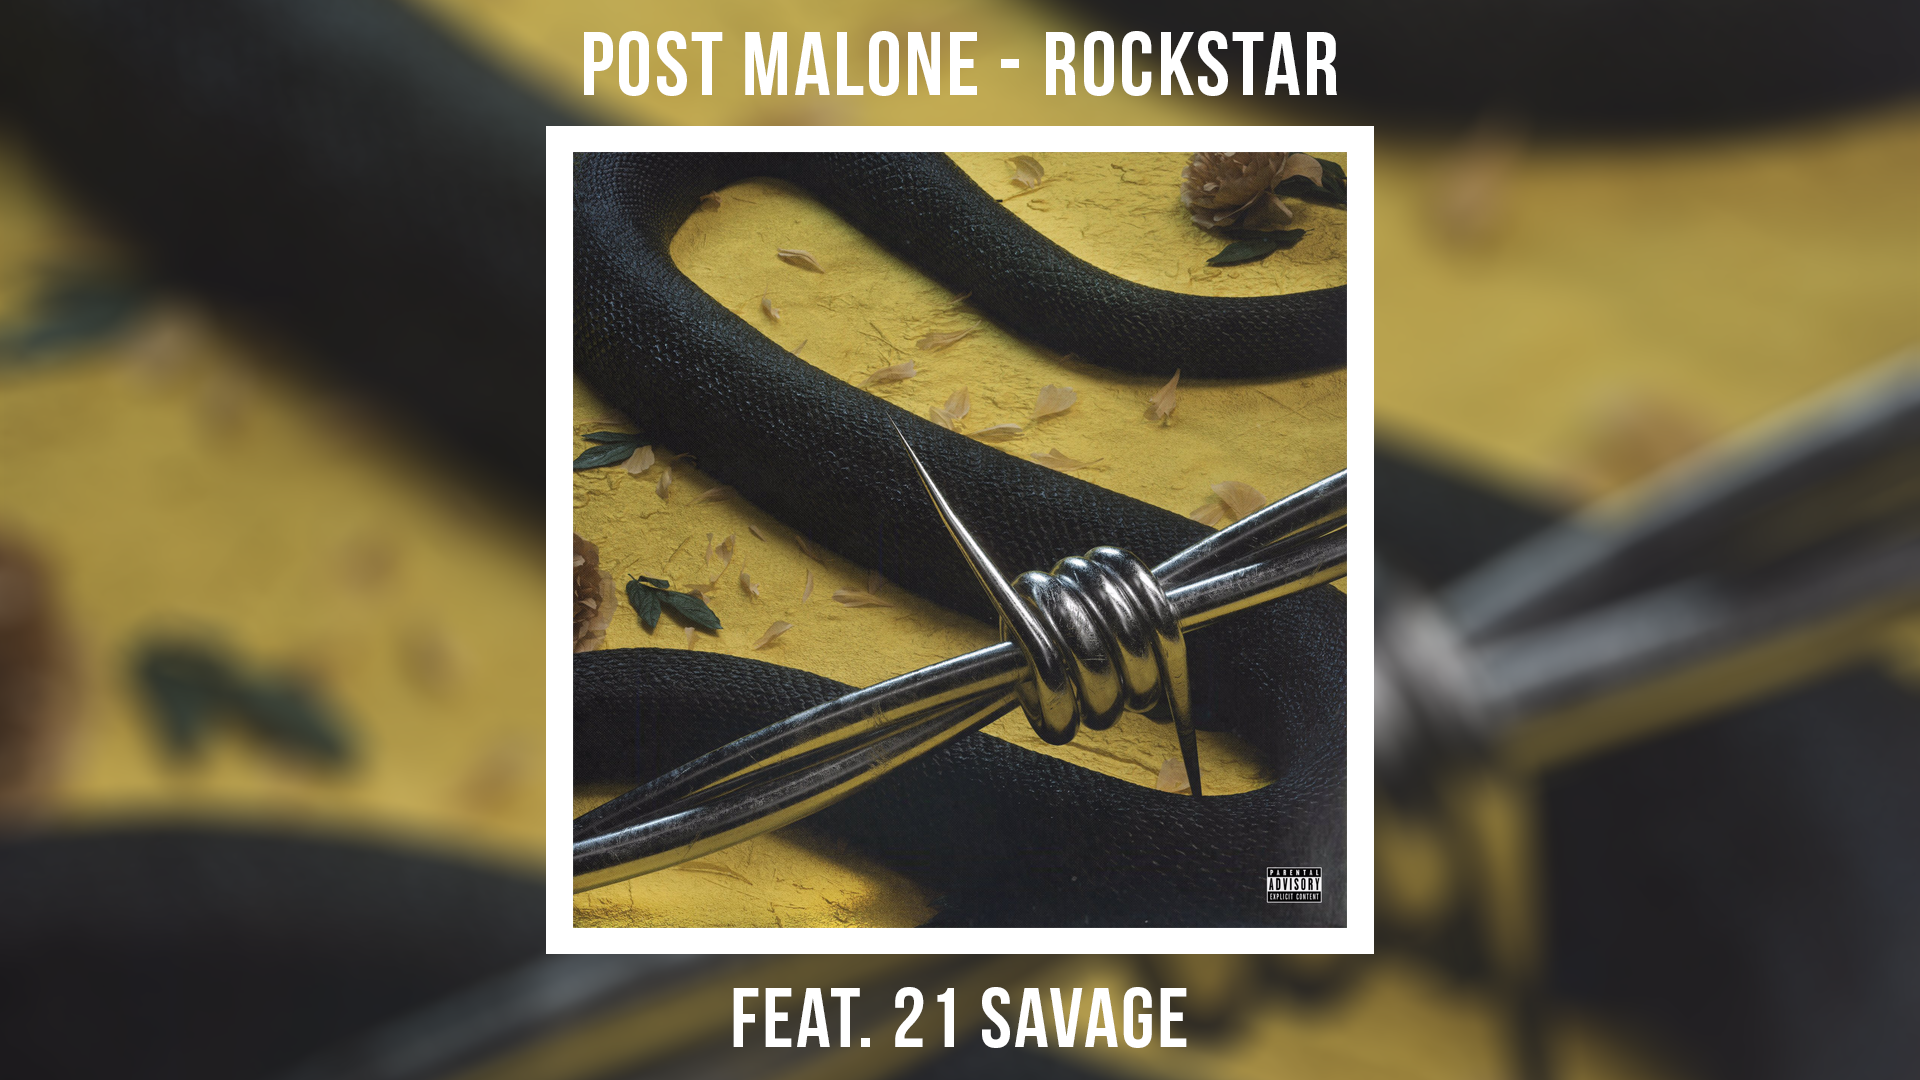 Рок стар песня слушать. Rockstar 21 Savage, Post Malone. Post Malone Rockstar обложка. Rockstar Post Malone 21 Savage обложка. Post Malone Rockstar ft. 21 Savage обложка.